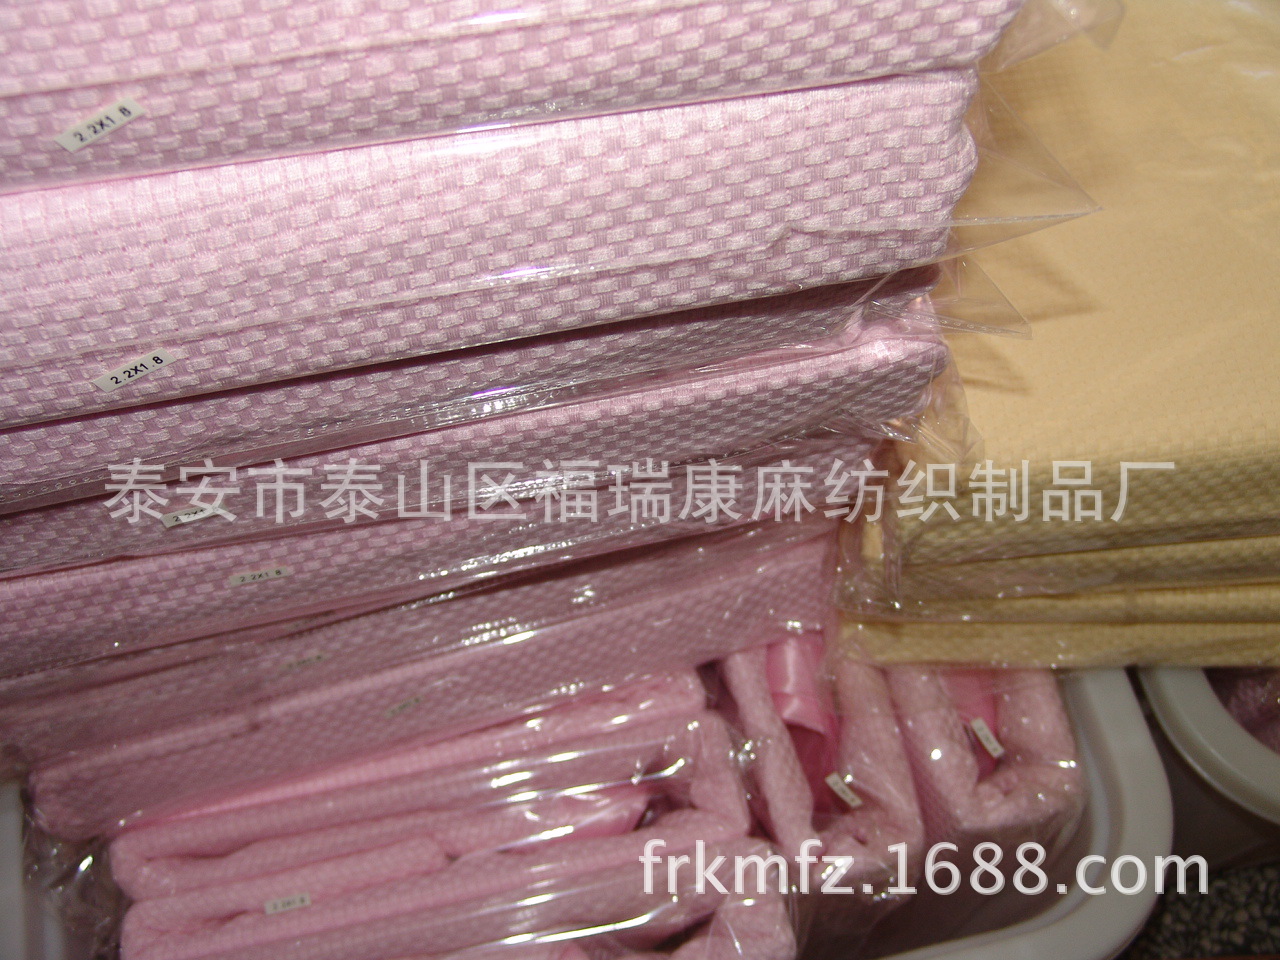 12 竹纖維蓋毯 220180